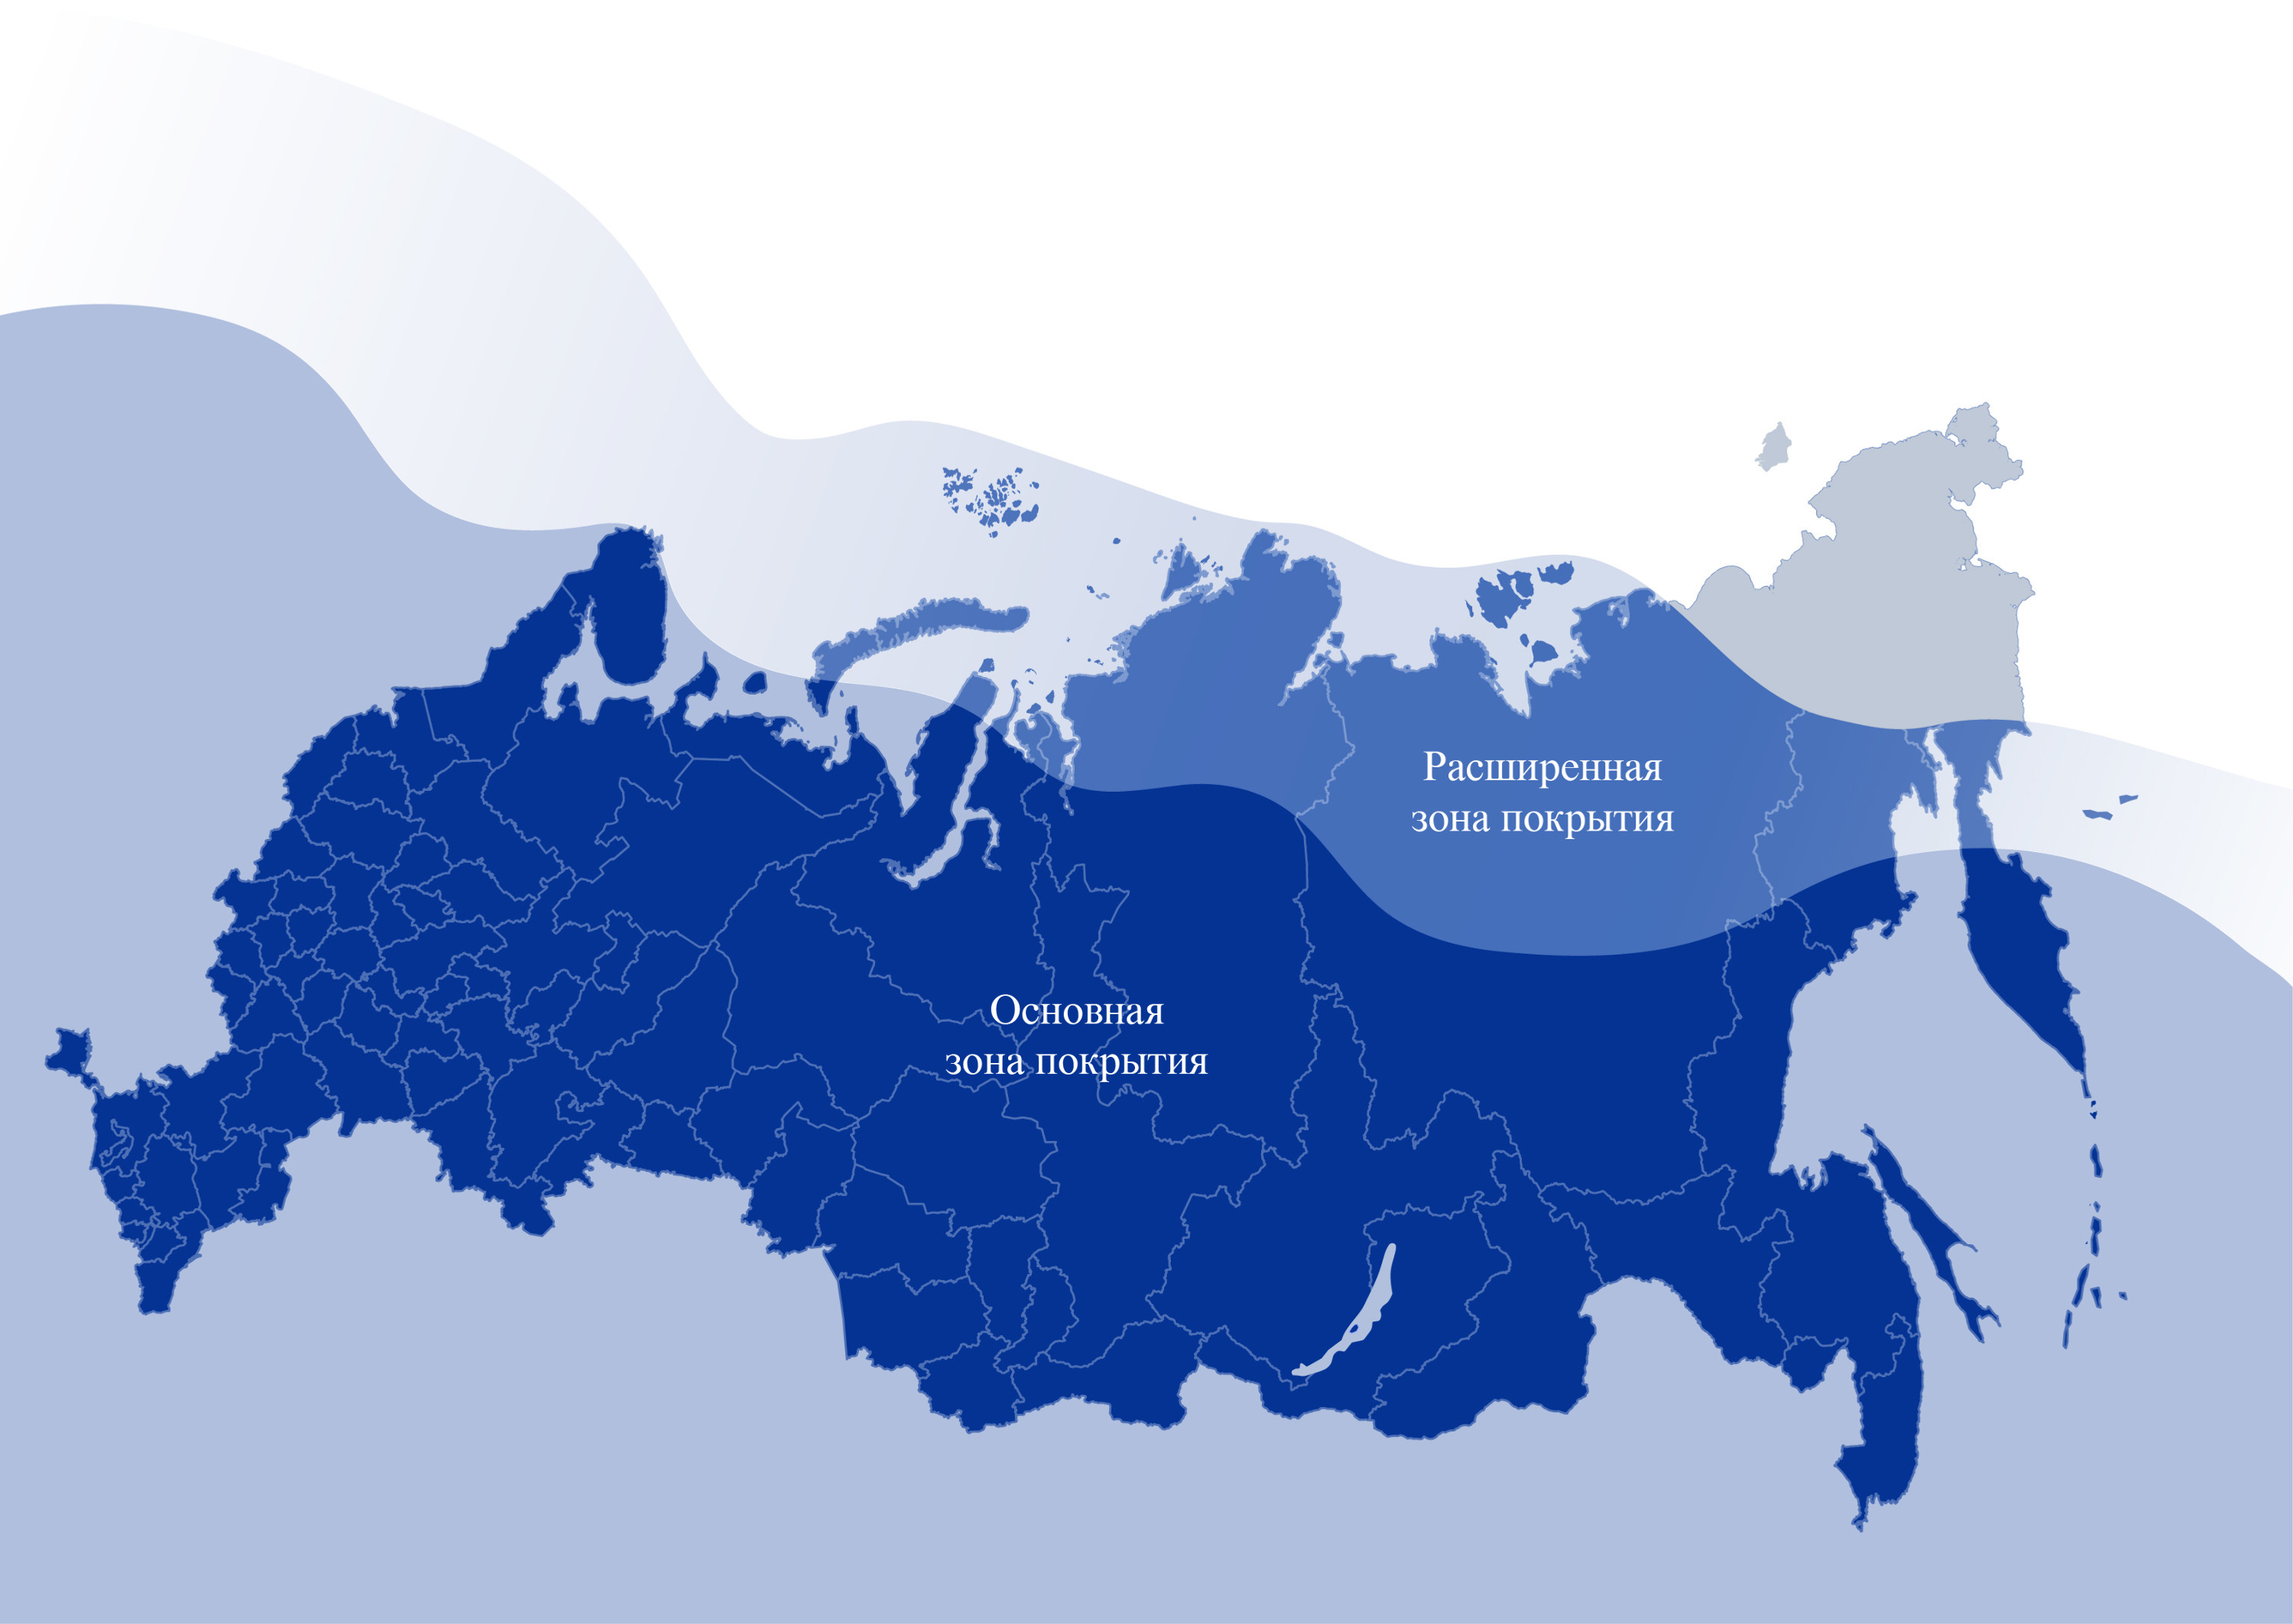 Основная зона покрытия спутниковой связи Thuraya охватывает большую часть России